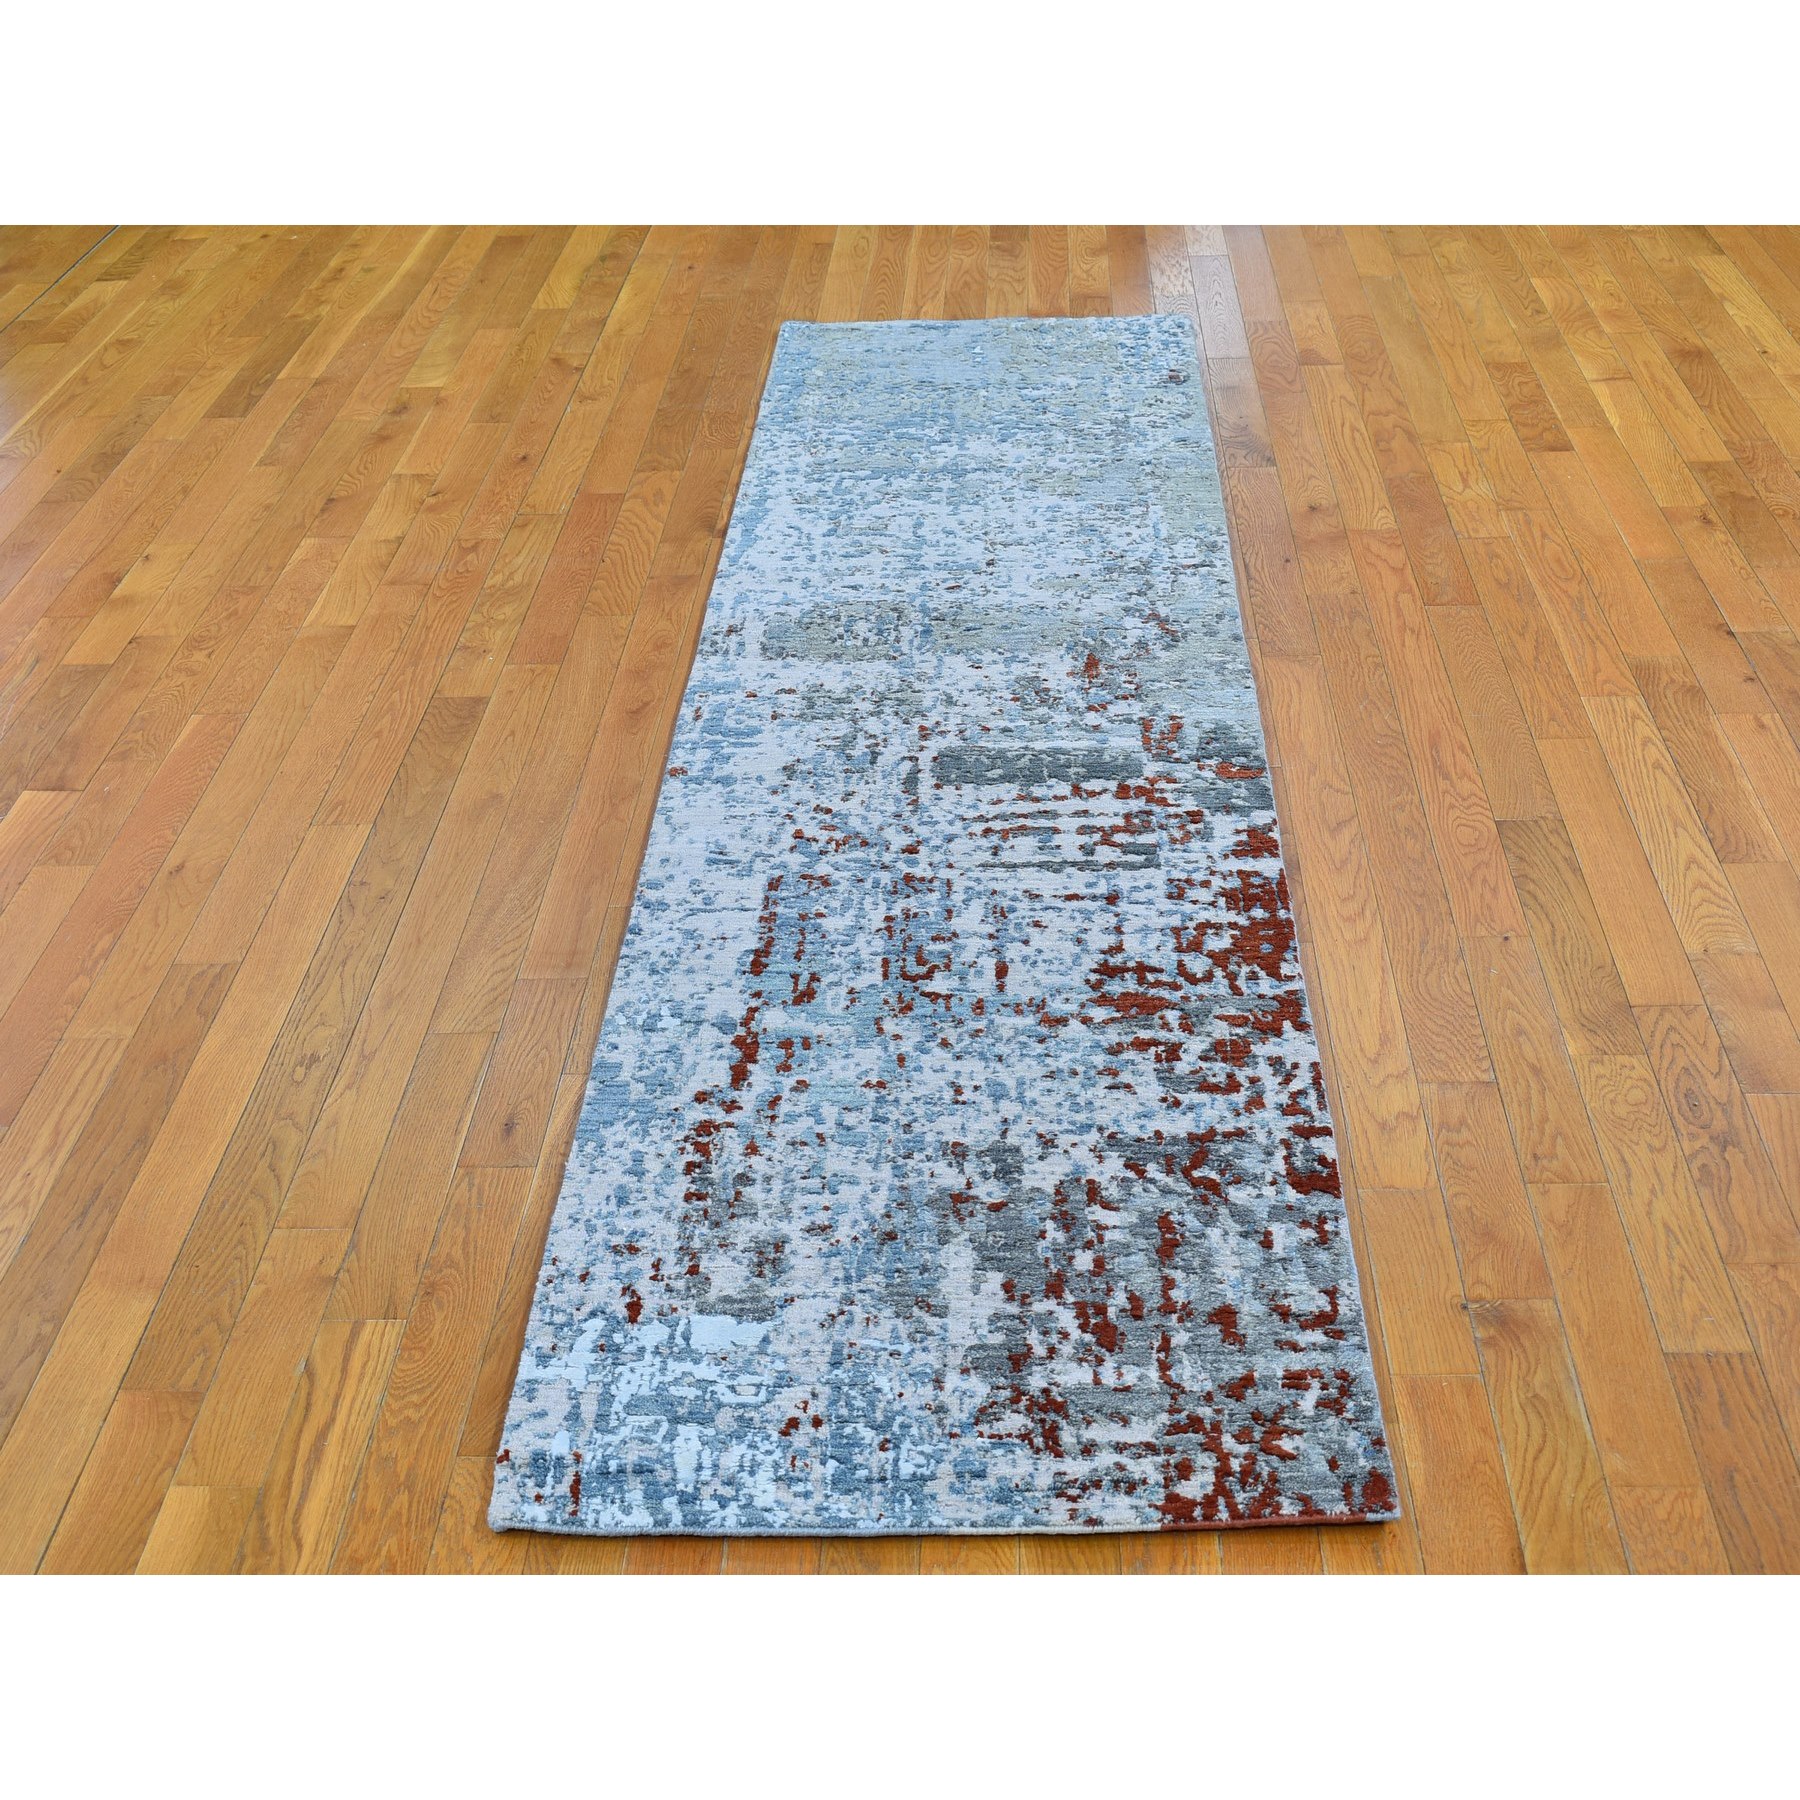 2'6"x10'2" Light Blue Abstract Design Wool and Silk Denser Weave Hand Woven Runner Oriental Rug 